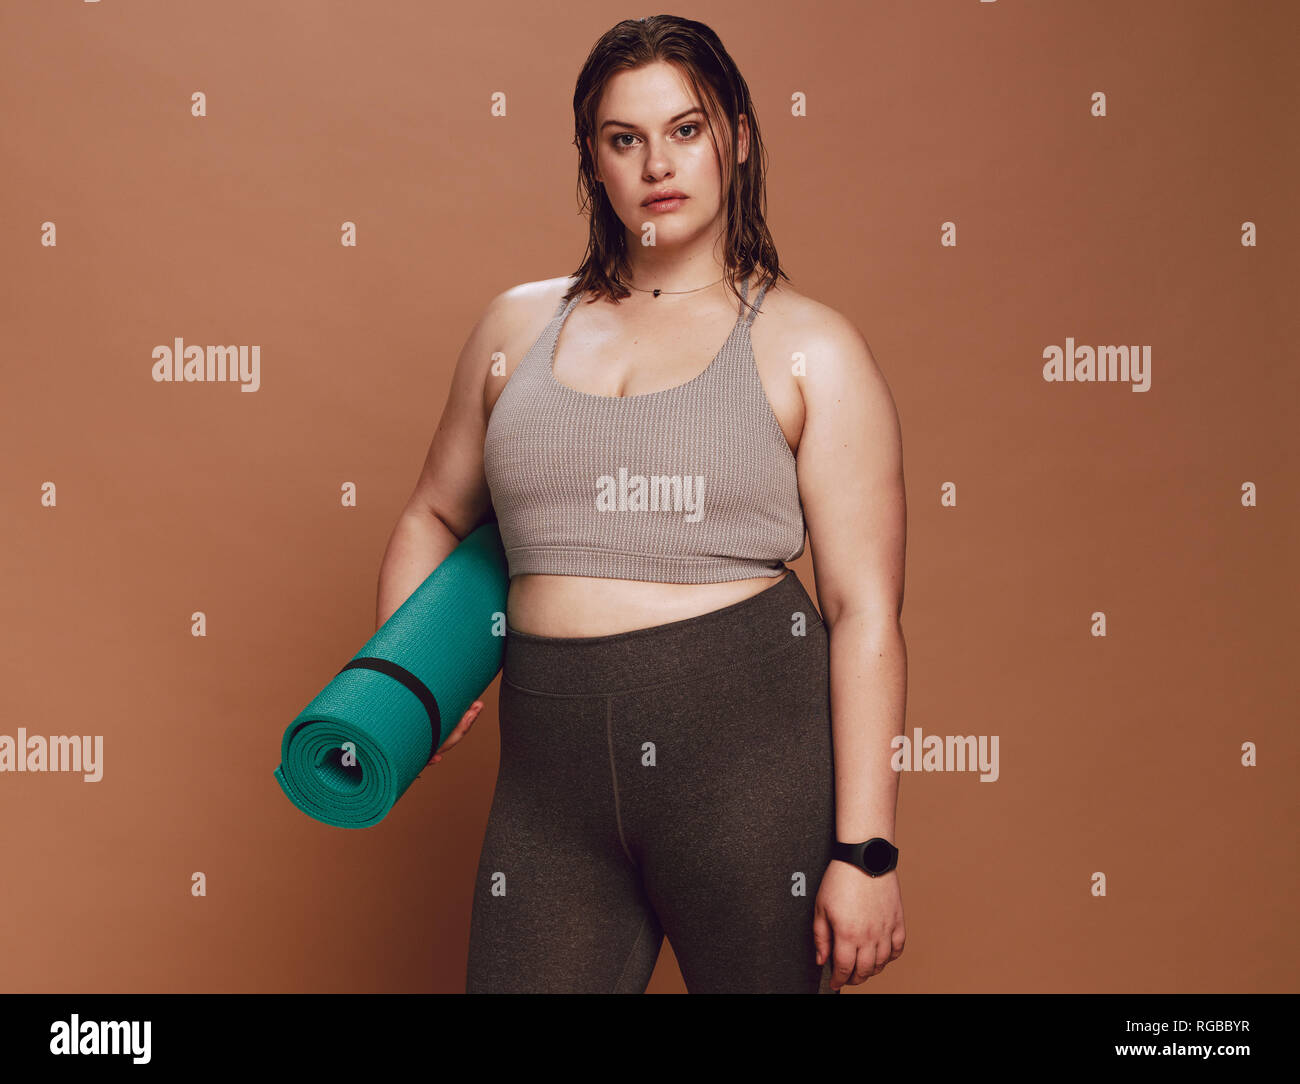 Gesunde junge Frau mit Sportbekleidung mit Yoga Matte gegen braunen Hintergrund. Stockfoto